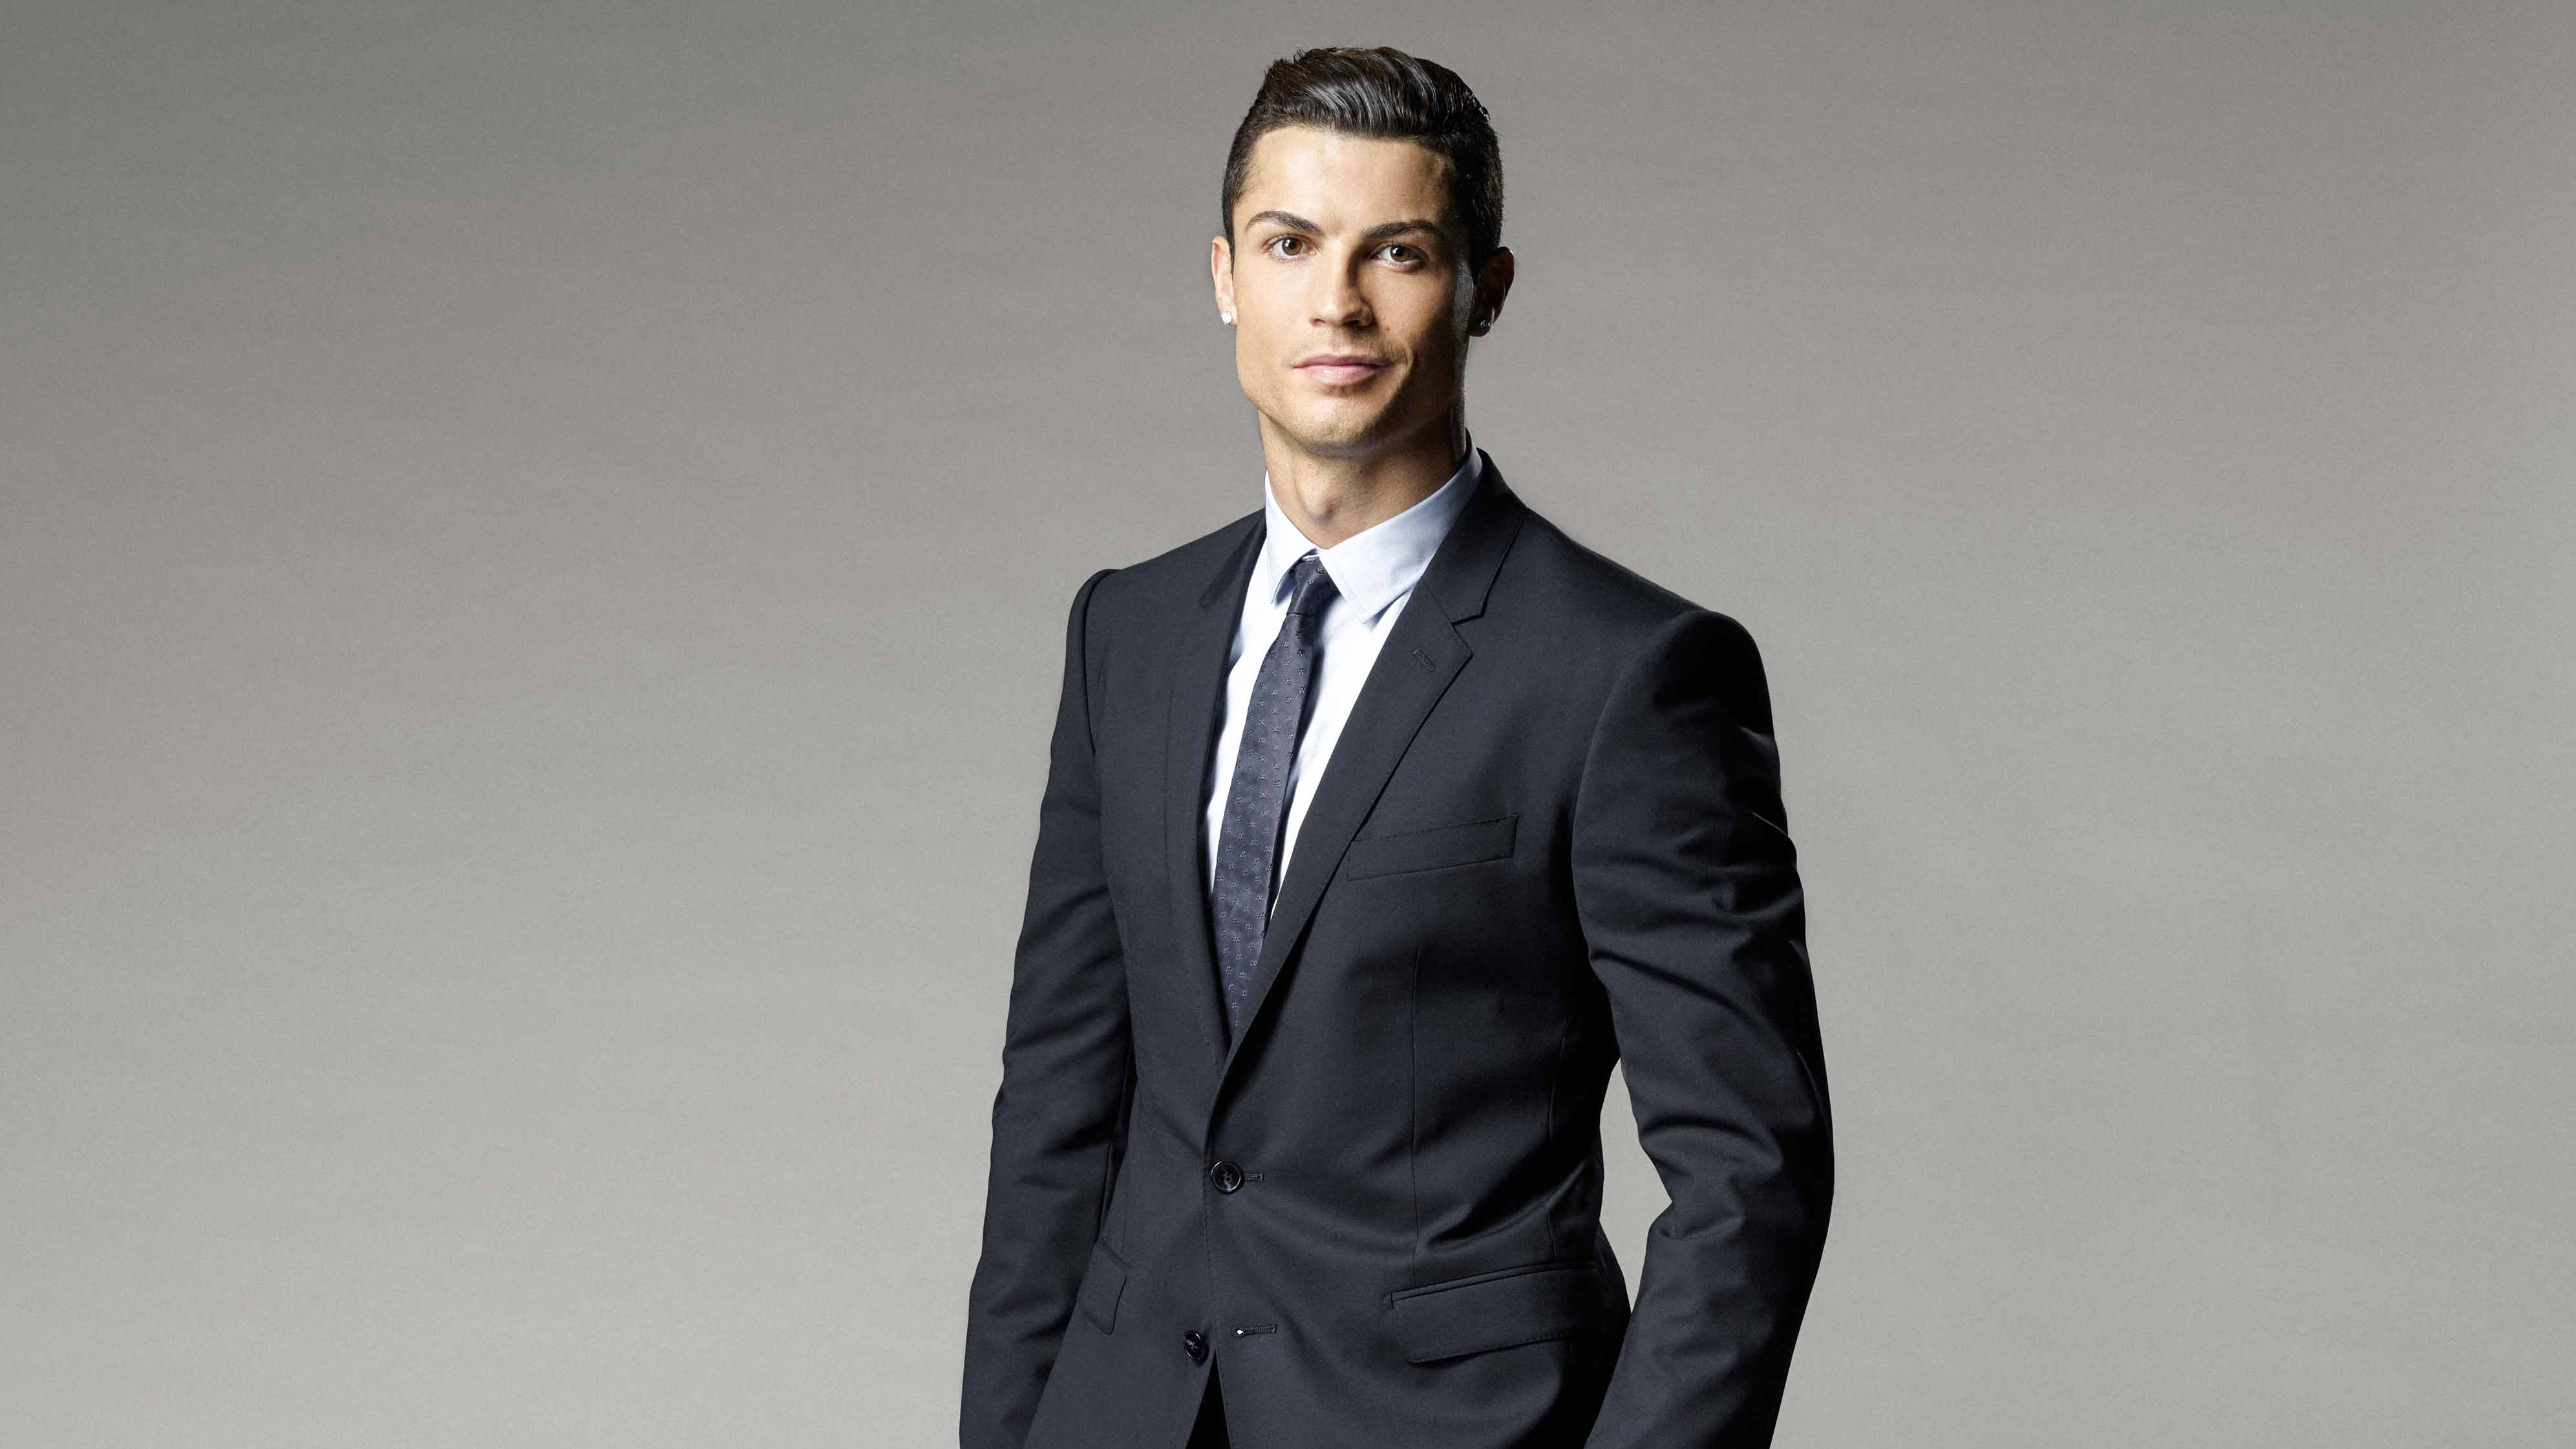 Fondos de Pantalla Cristiano Ronaldo, el Real Madrid c f, la Juventus f c,  Jugador de Fútbol, Traje, Imágenes y Fotos Gratis